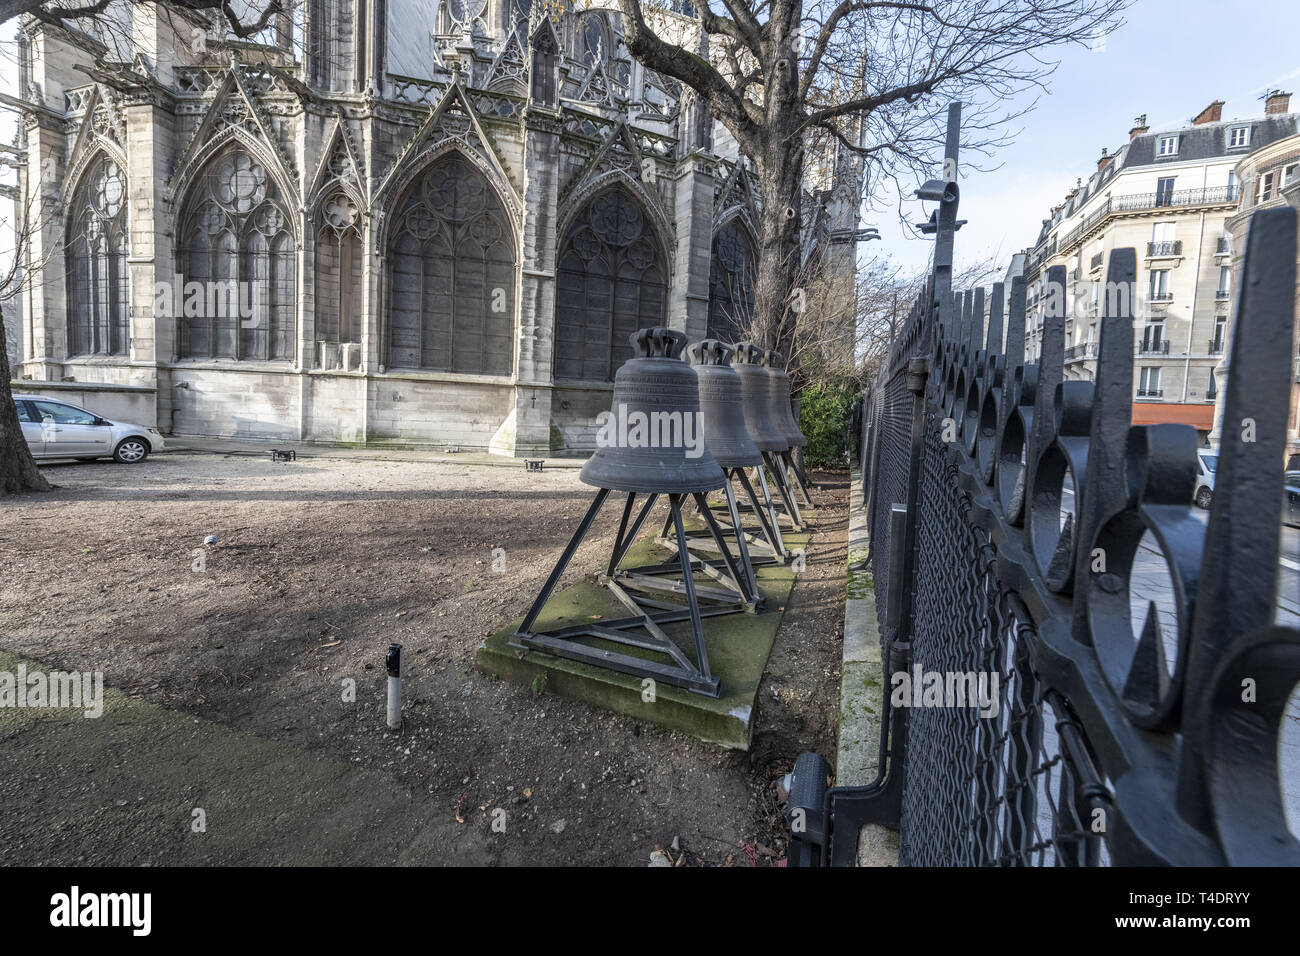 Frankreich, Paris, ein Satz der alten Glocken von der Kathedrale Notre Dame hat von der Gießerei gespeichert wurde und eine neue Heimat gegeben. Stockfoto